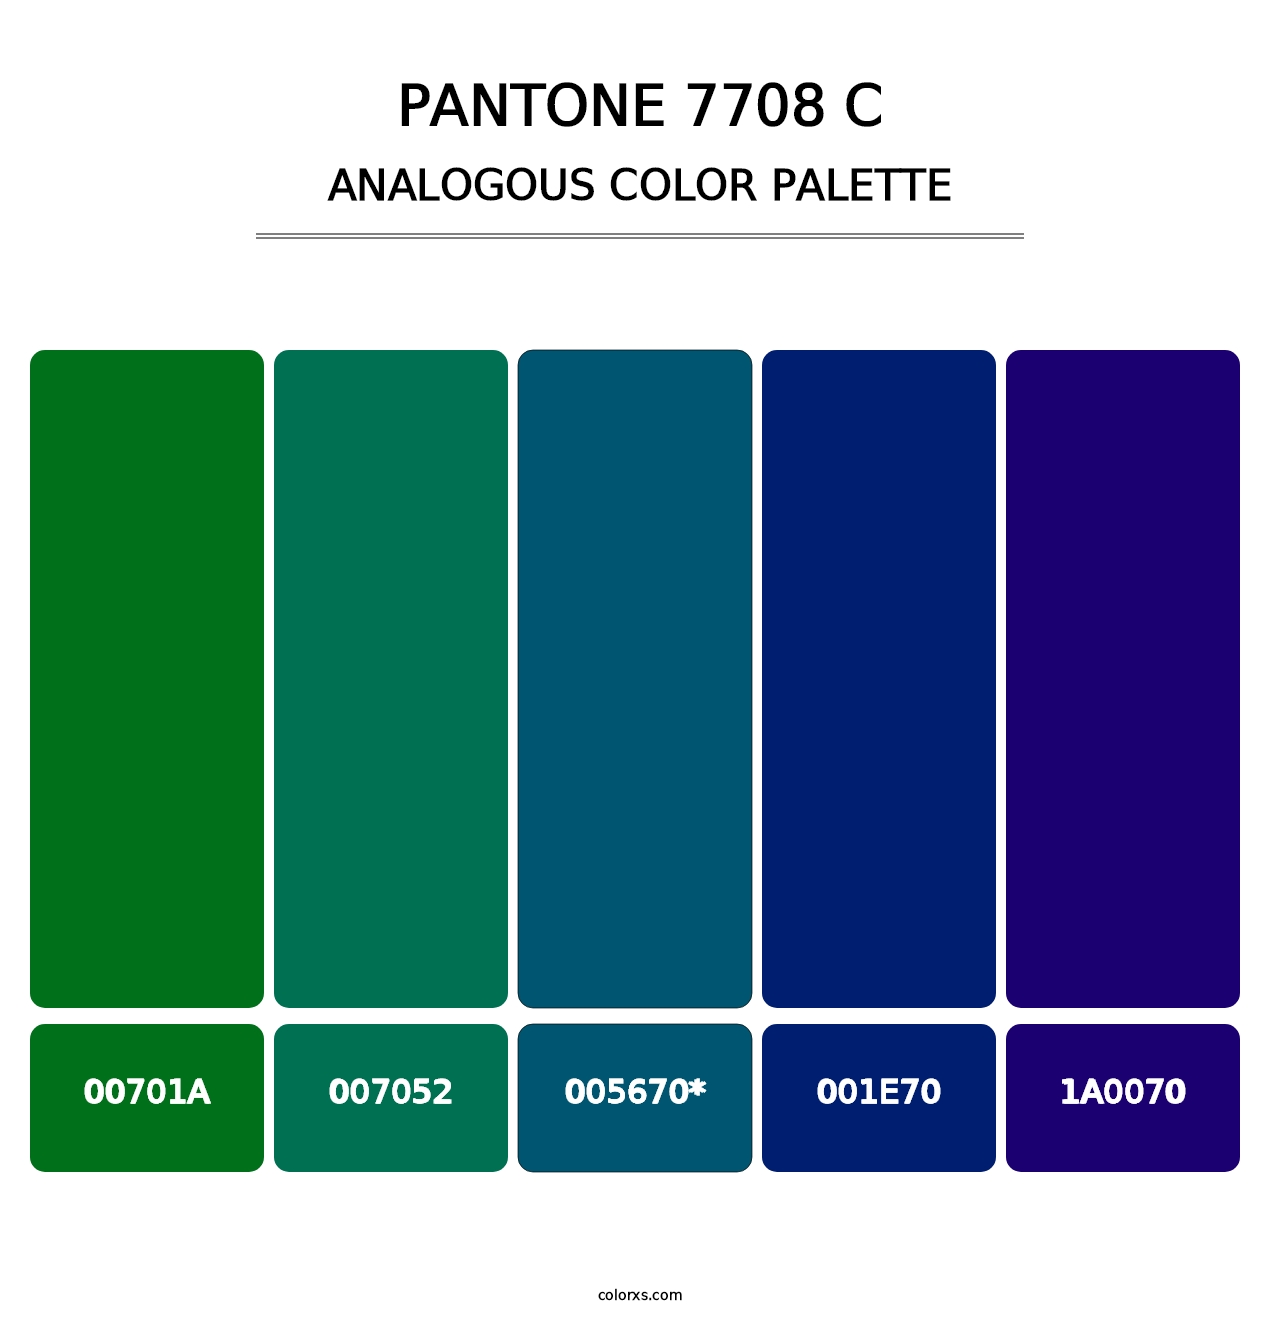 PANTONE 7708 C - Analogous Color Palette